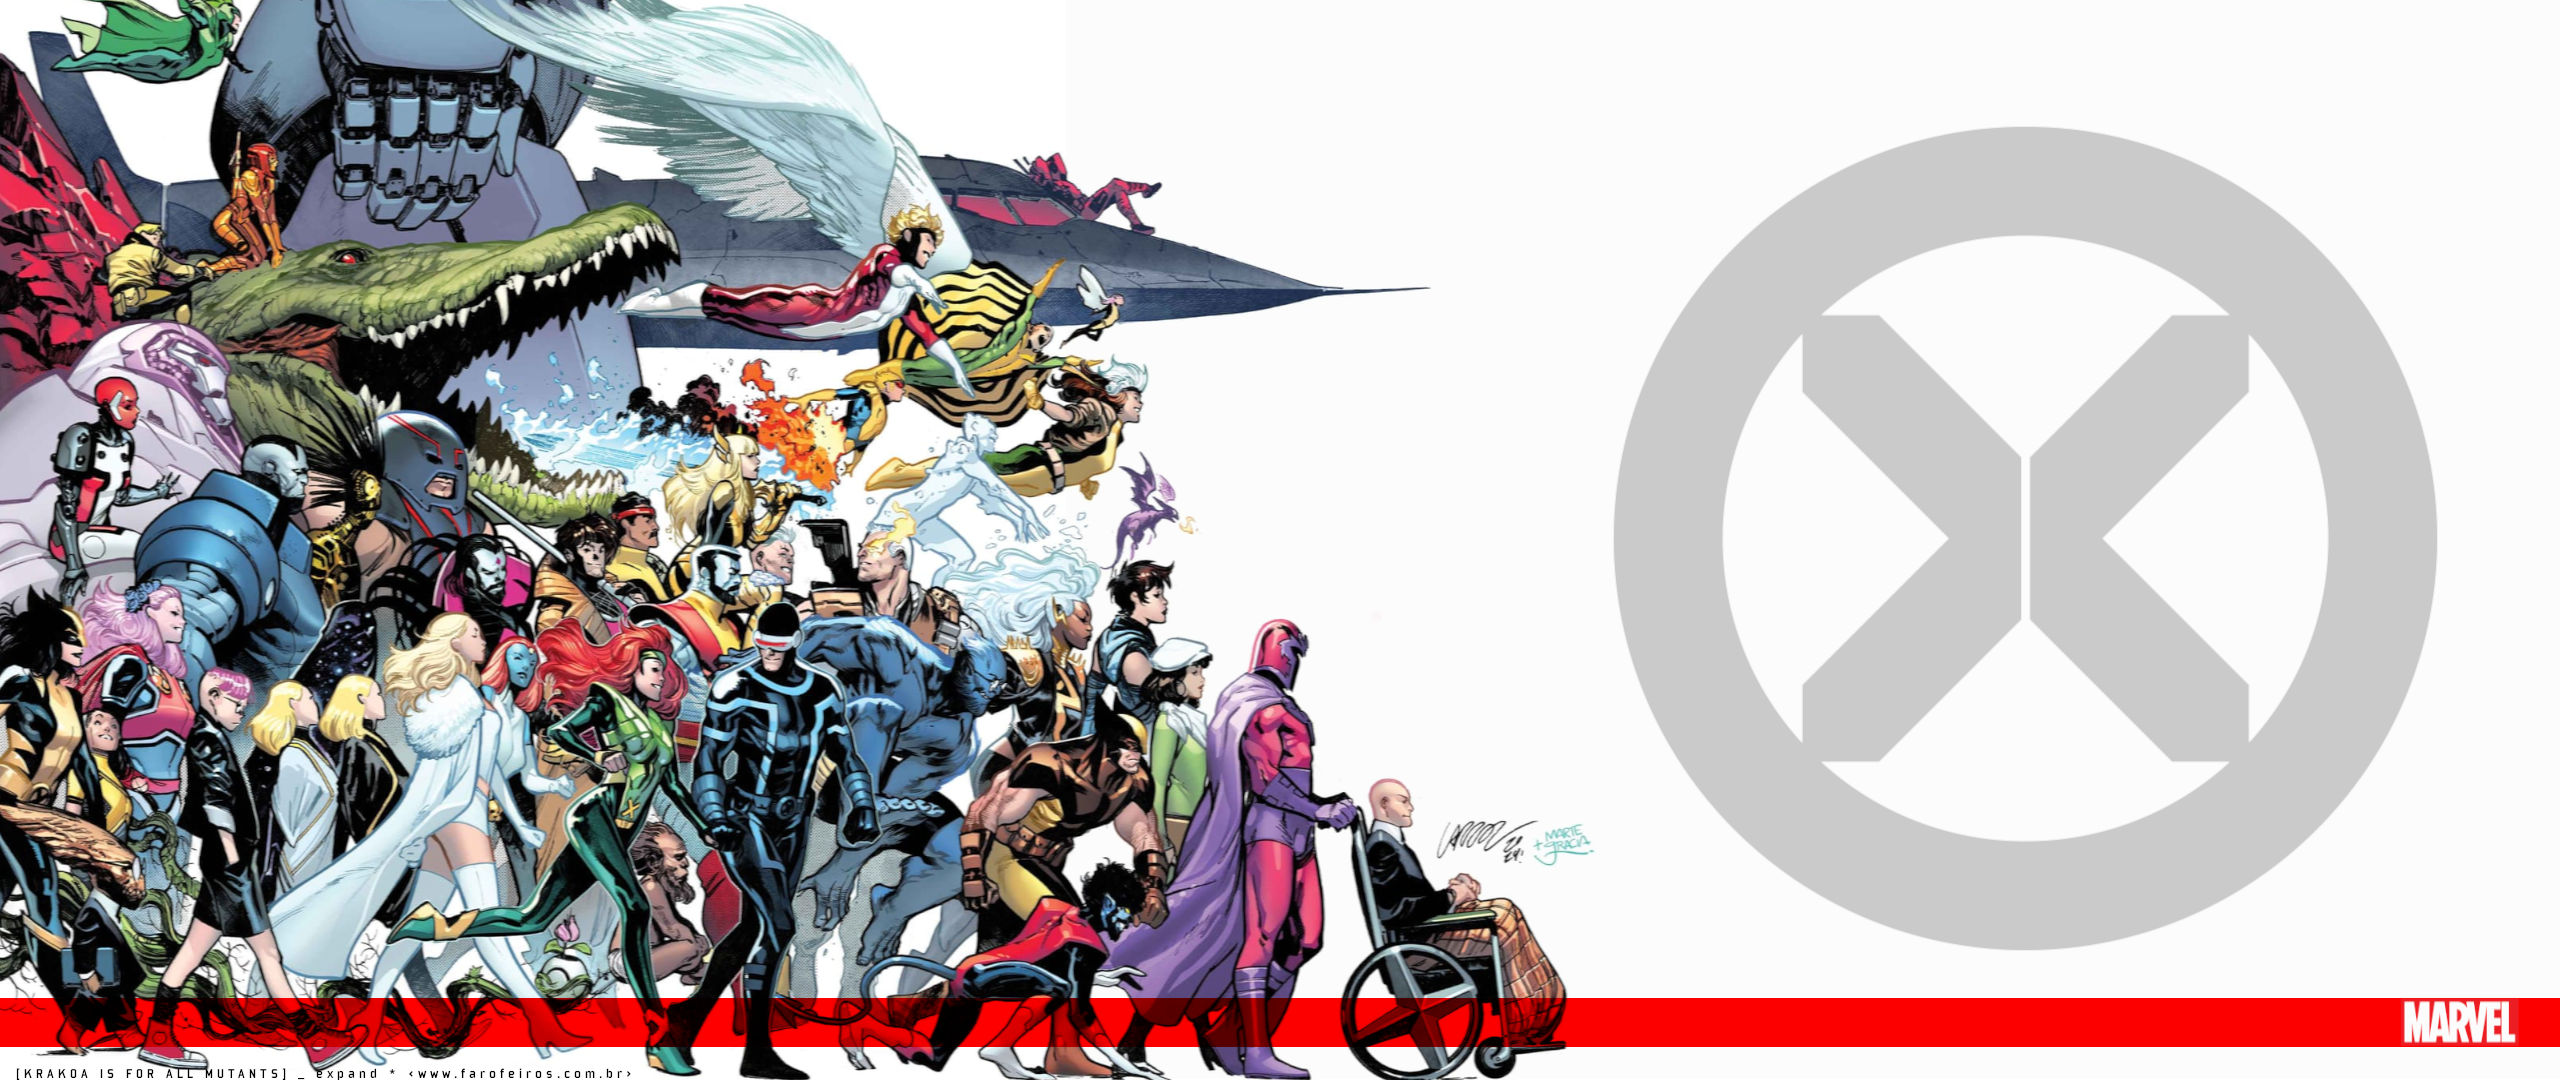 Papel de Parede X-Men #35 - Uncanny X-Men #700 - Marvel Comics - Pepe Larraz - Marte Garcia - BLOG FAROFEIROS